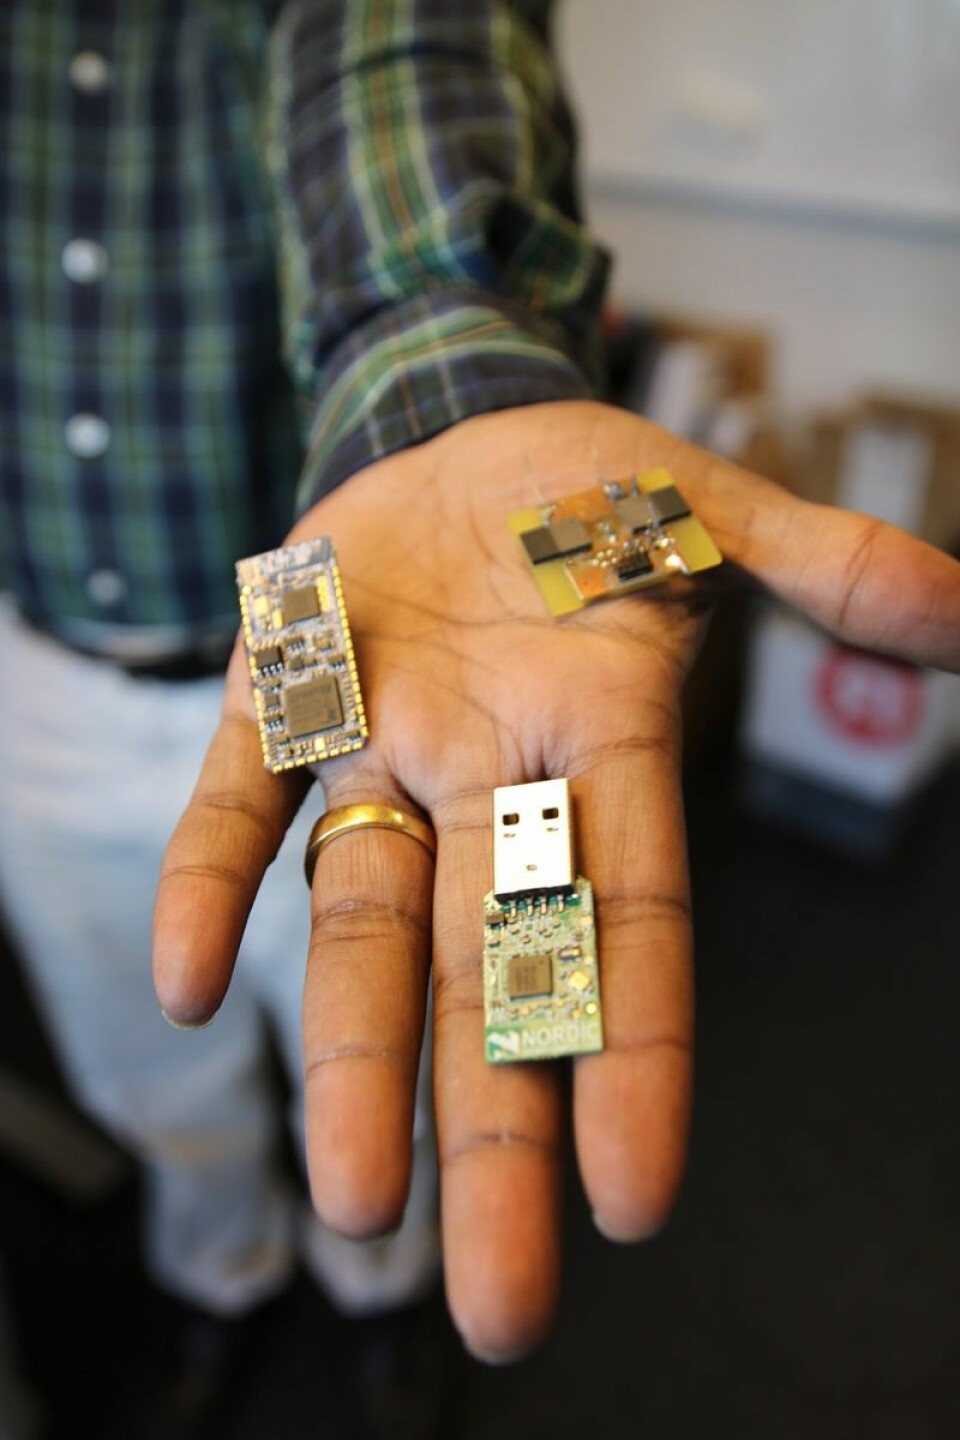 Det er flere mikroprosessorer på hver at disse tre sensornodene. (Foto: Atle Christiansen)